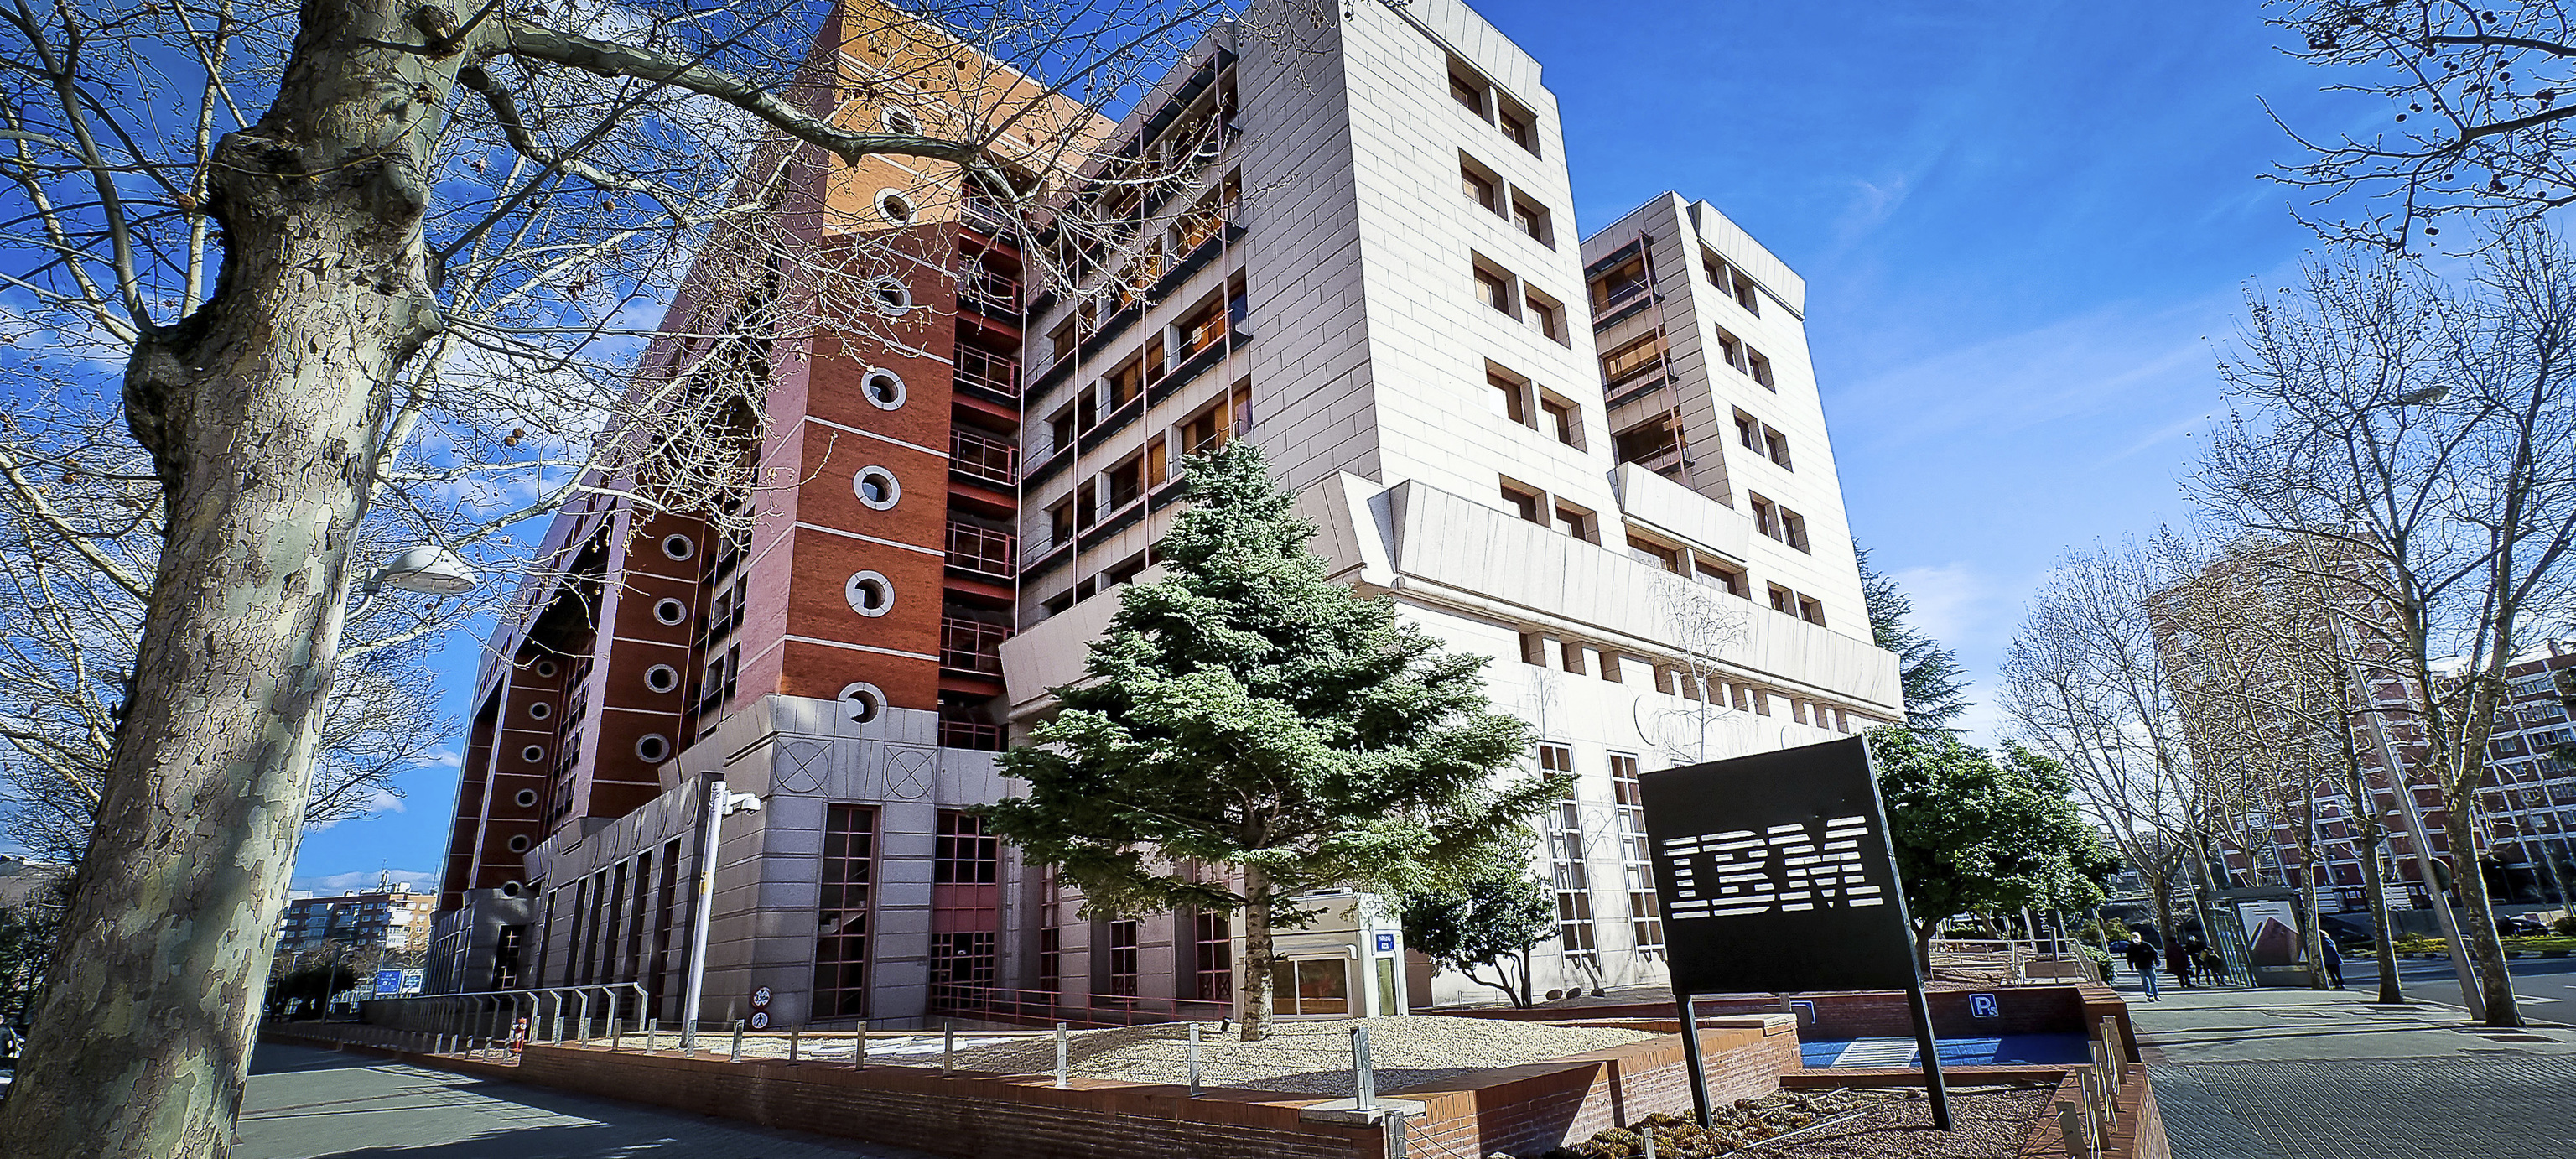 IBM en Madrid, Apple en Barcelona… España se posiciona como casero de las grandes tecnológicas